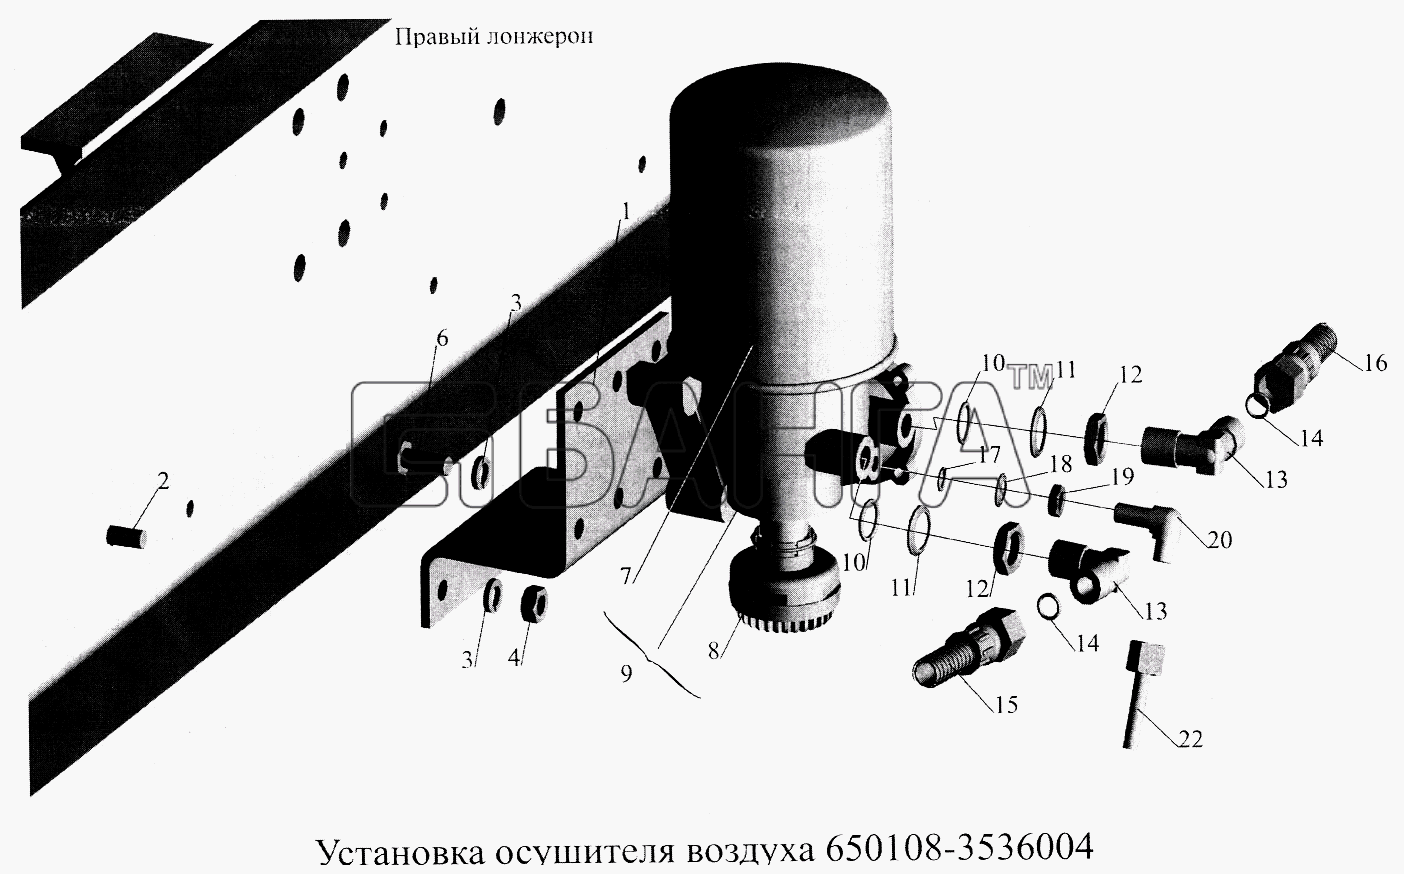 МАЗ МАЗ-5516А5 Схема Установка осушителя воздуха banga.ua